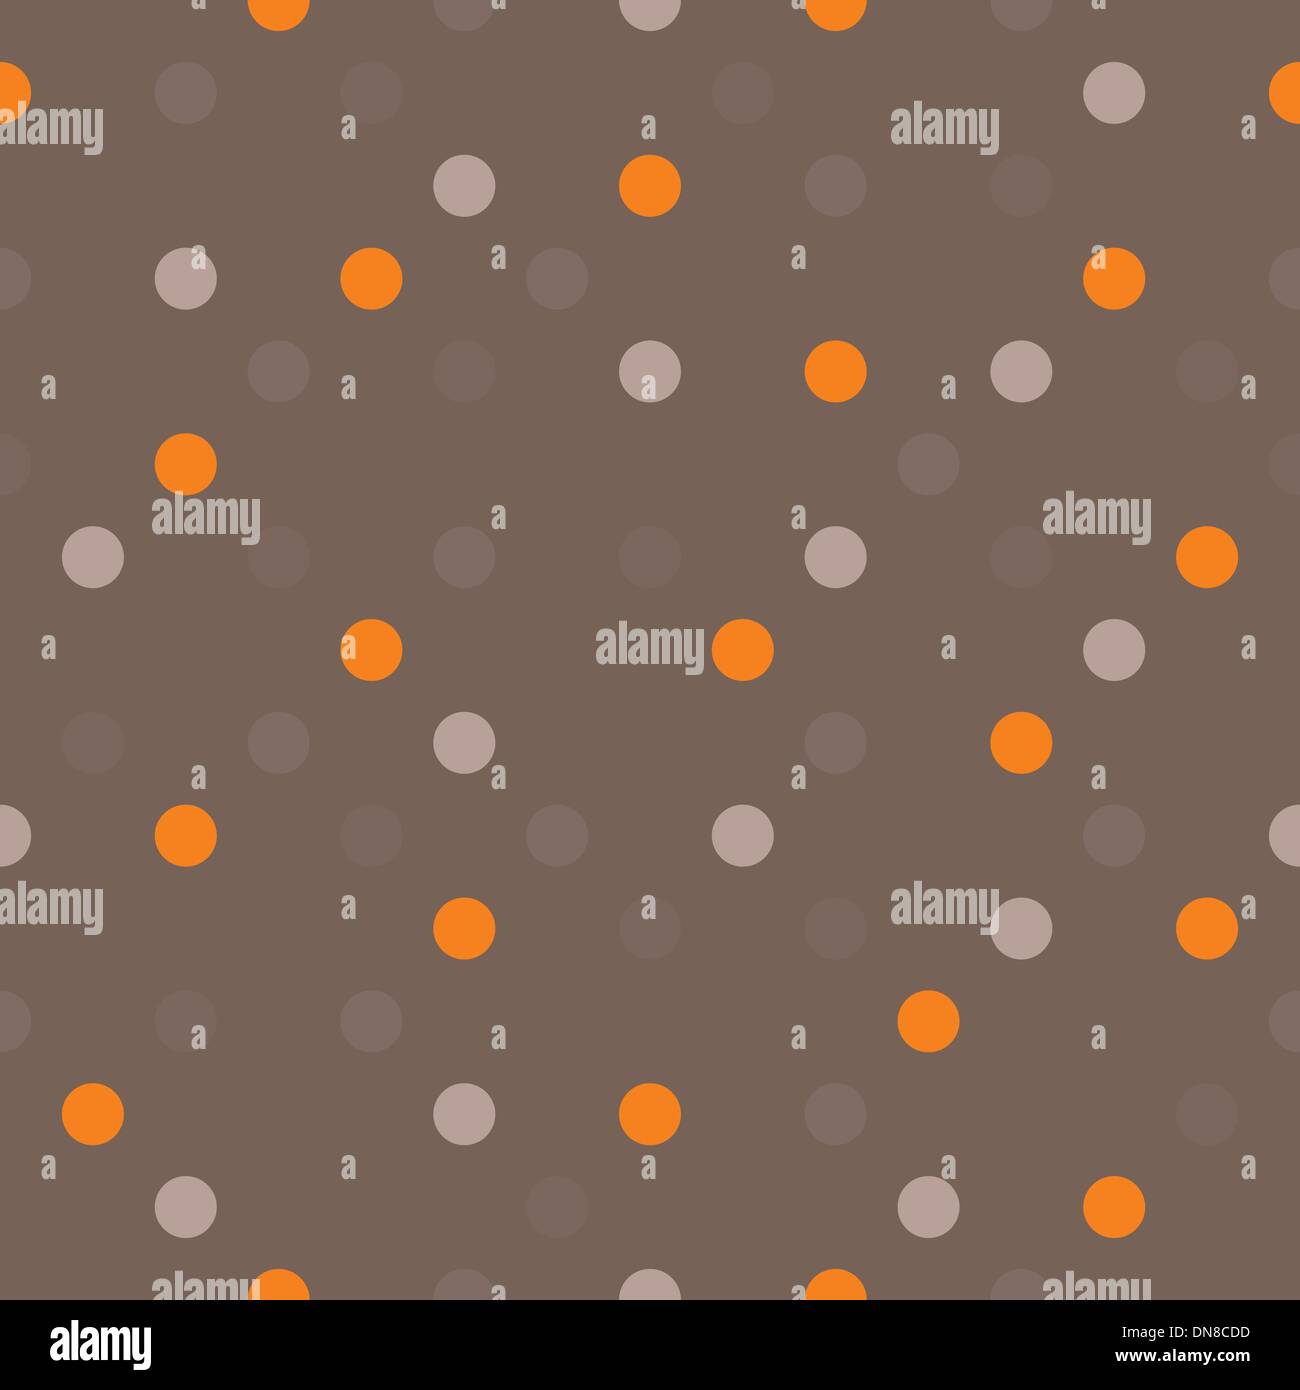 Modèle vectoriel continu avec orange, beige, brun et gris à pois colorés sur un fond brun foncé. Illustration de Vecteur